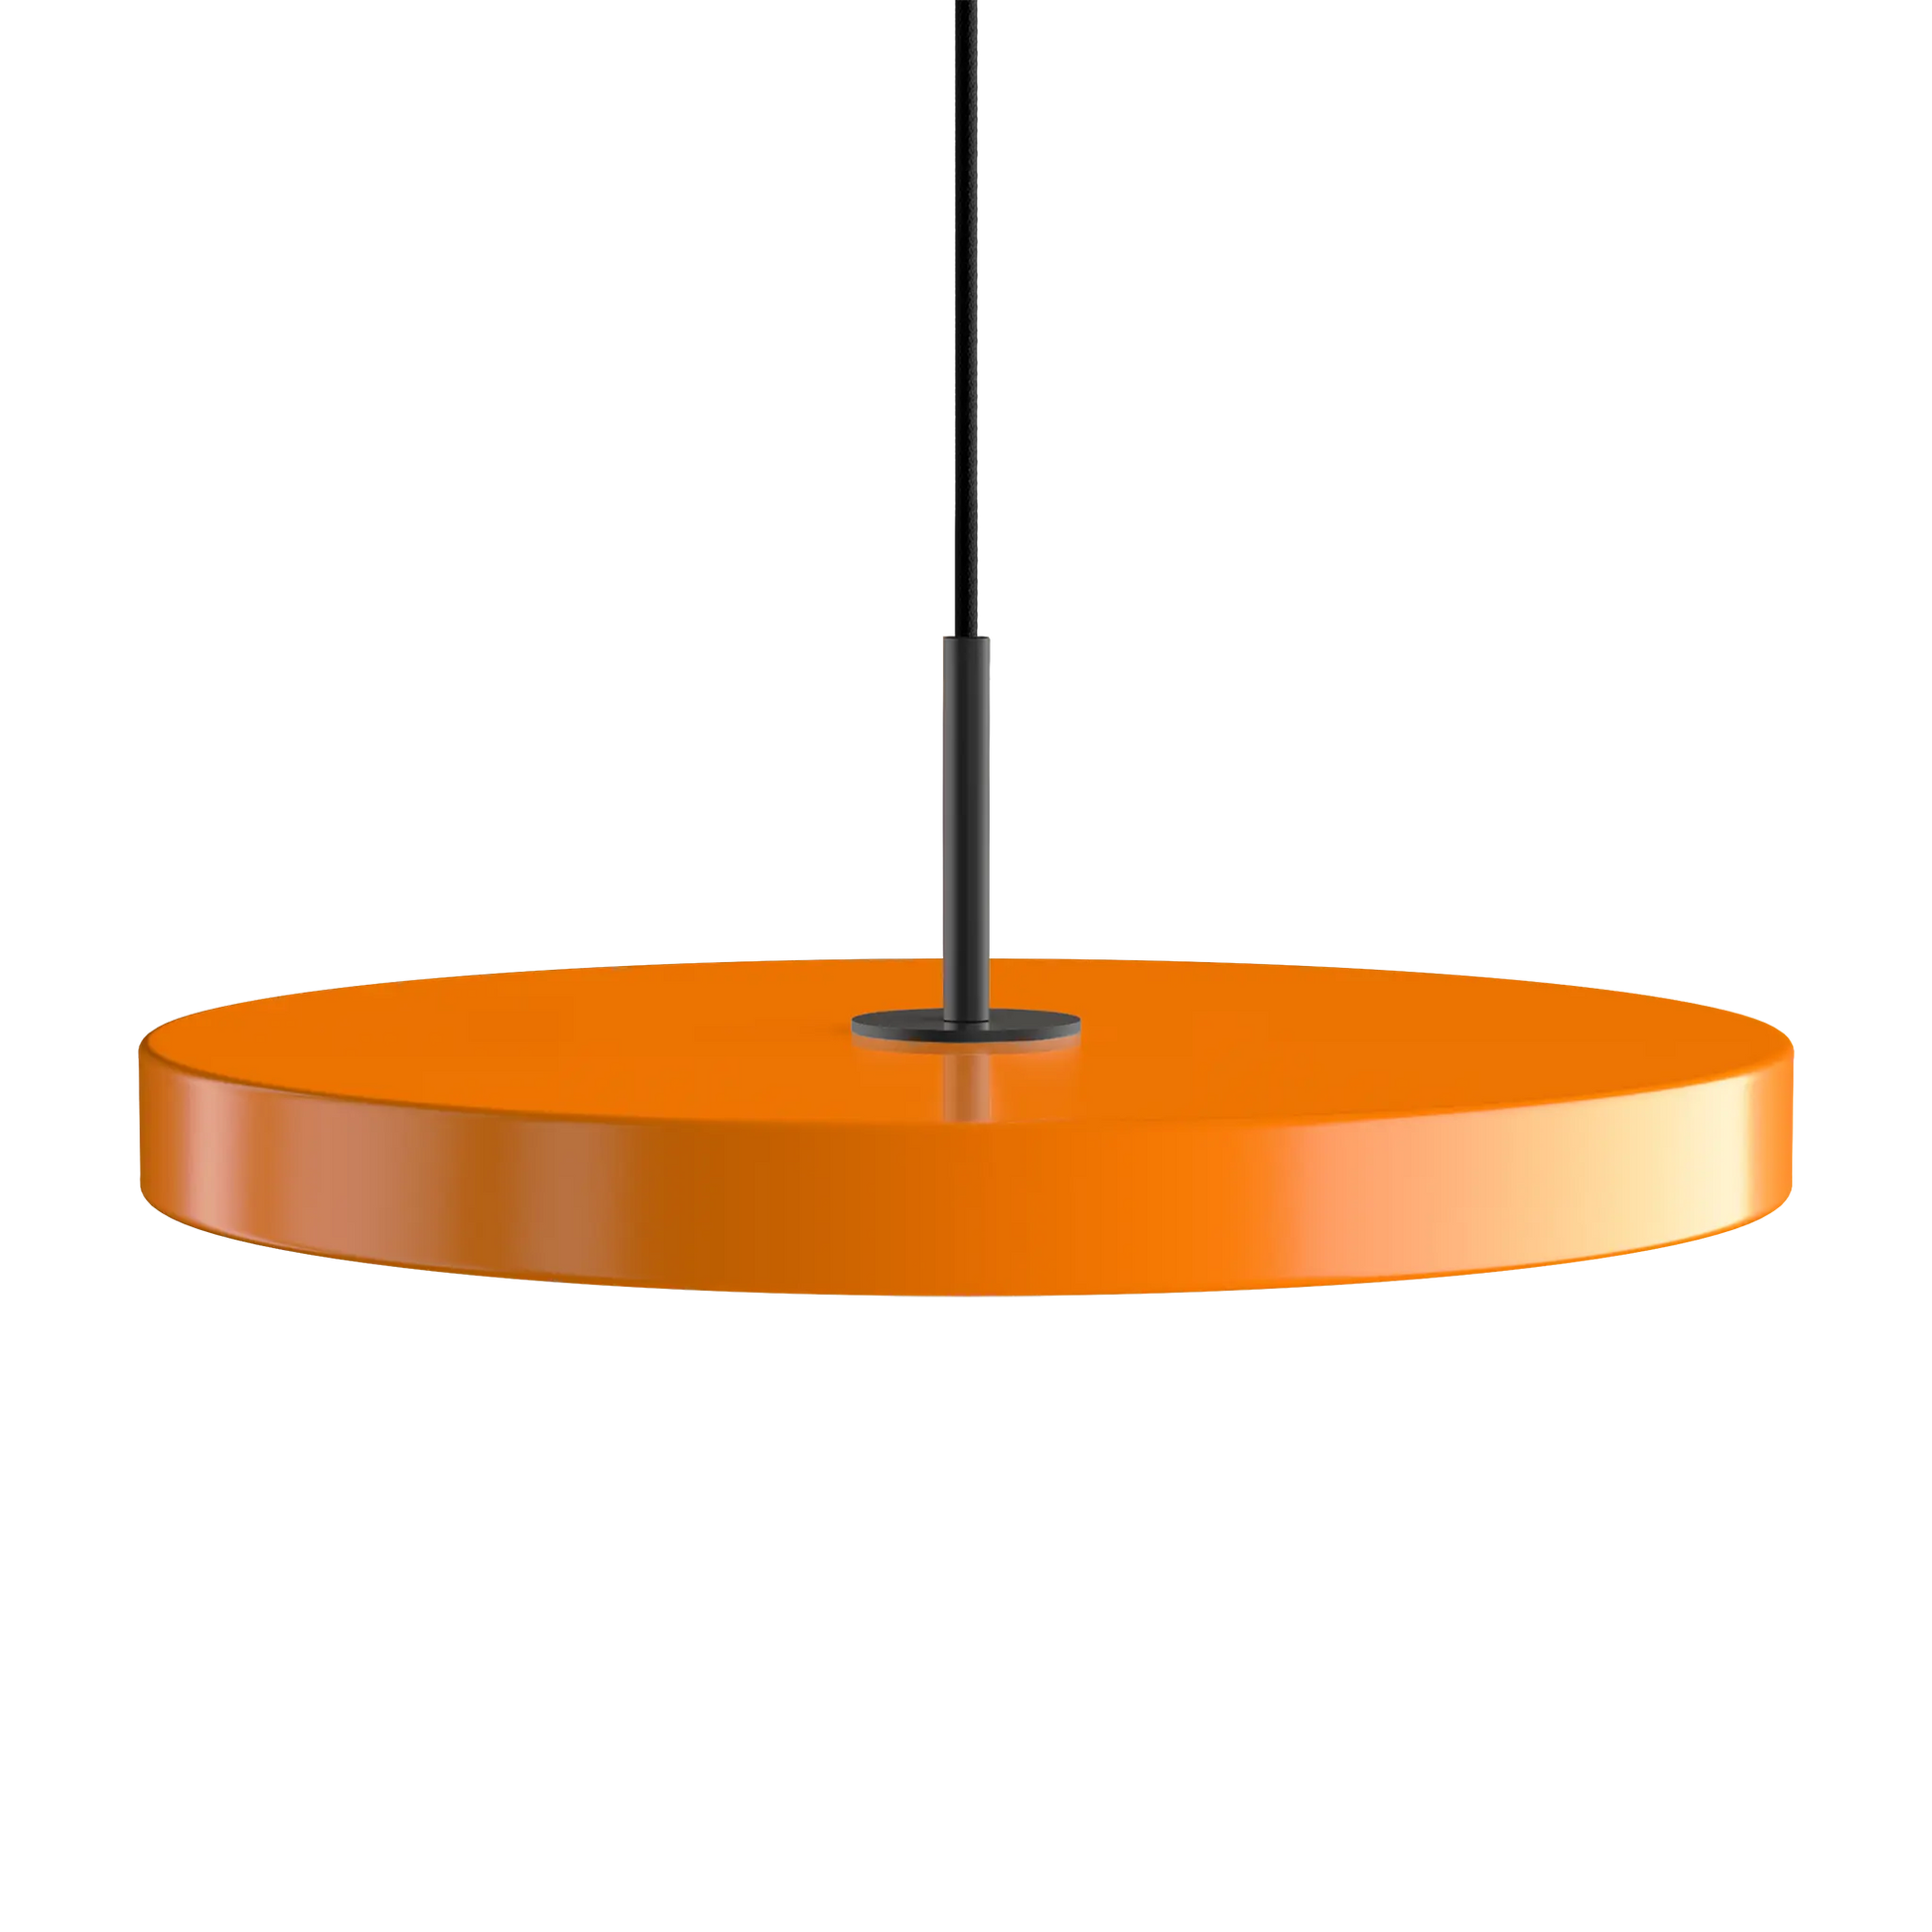 Asteria Medium taklampa med svart topdel i färgen Nuance Orange från Umage